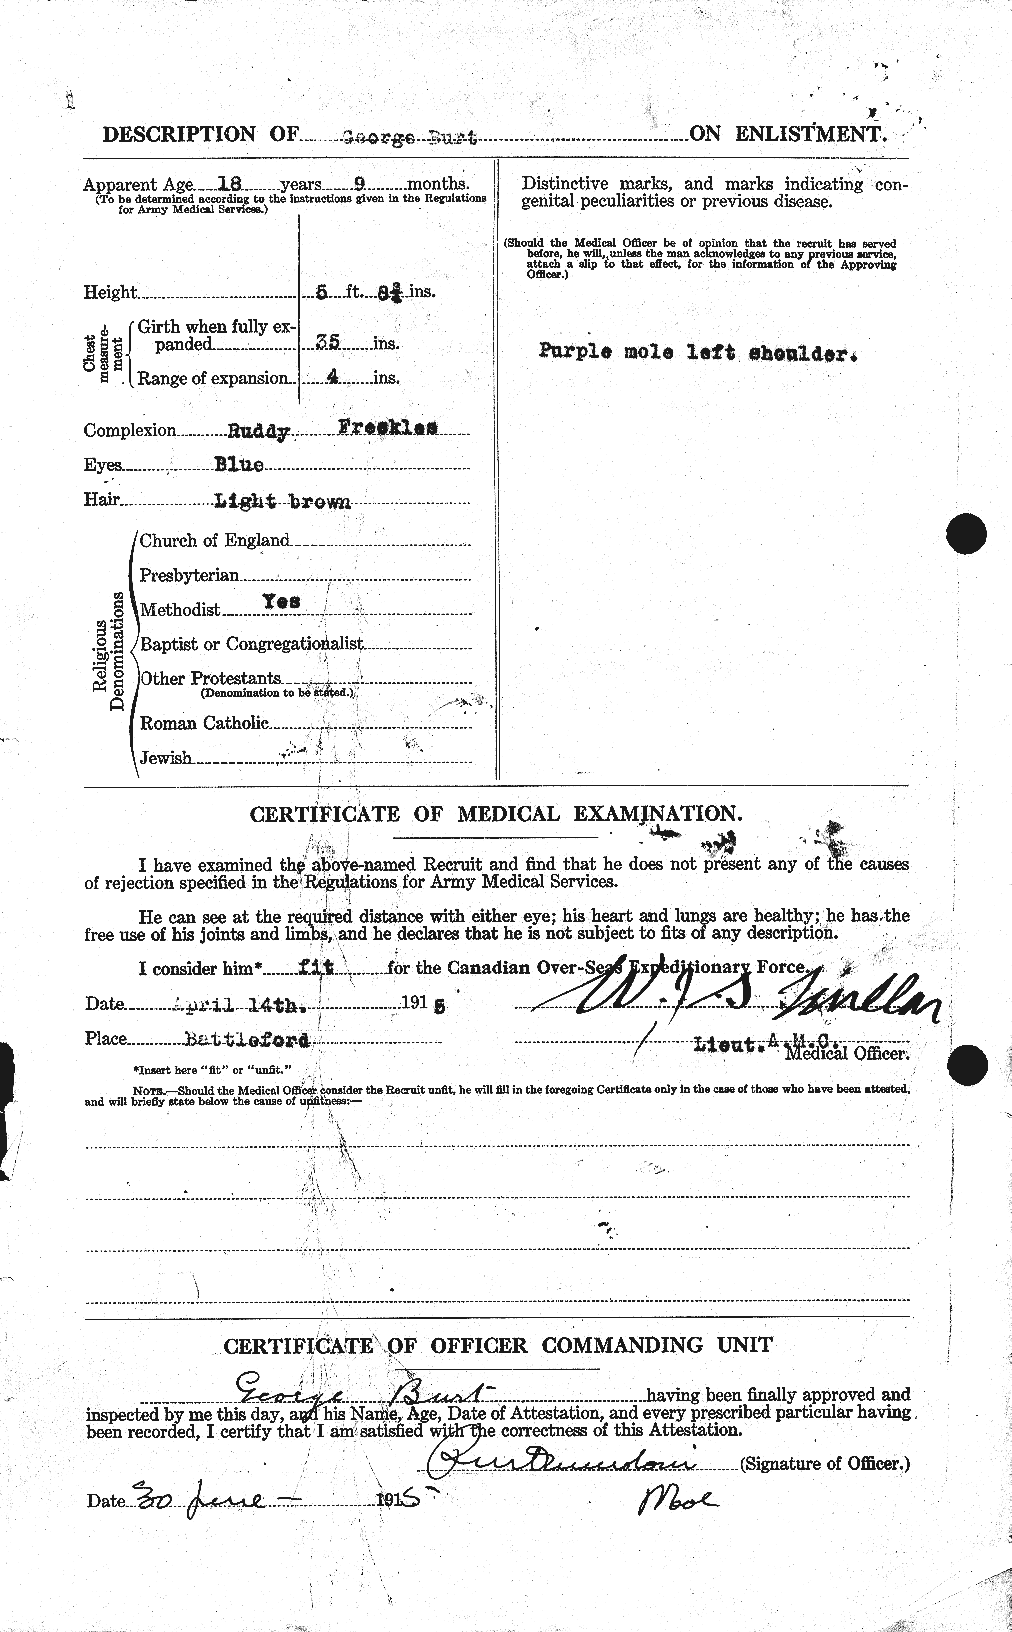 Dossiers du Personnel de la Première Guerre mondiale - CEC 275007b